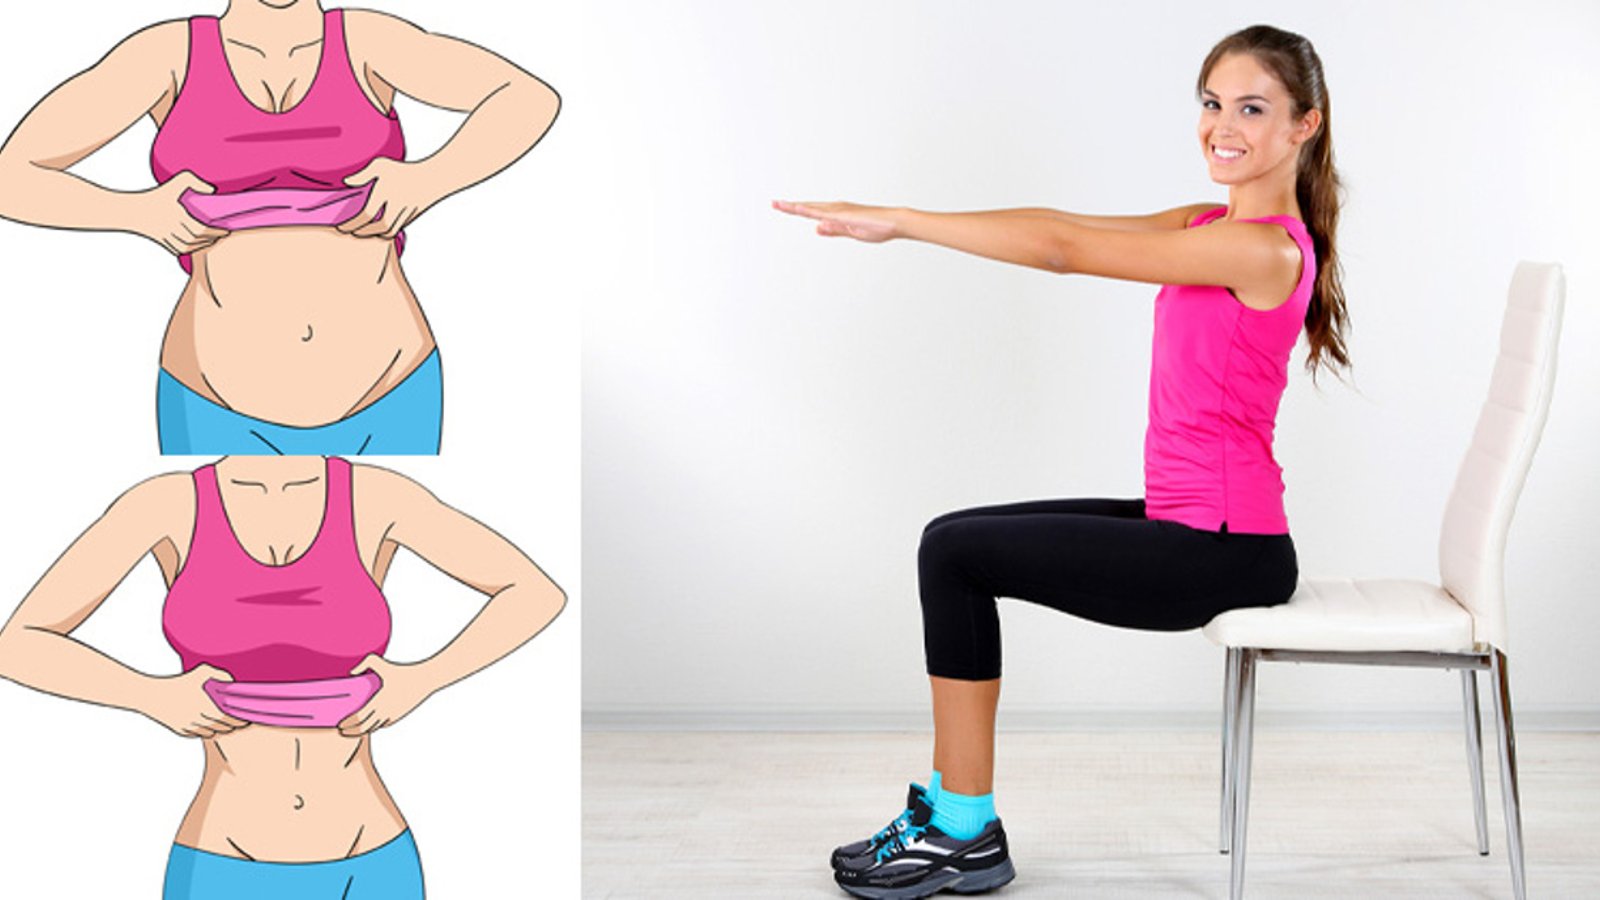 Voici 5 exercices pour perdre la graisse du ventre que vous pourrez faire assis, depuis votre chaise! 